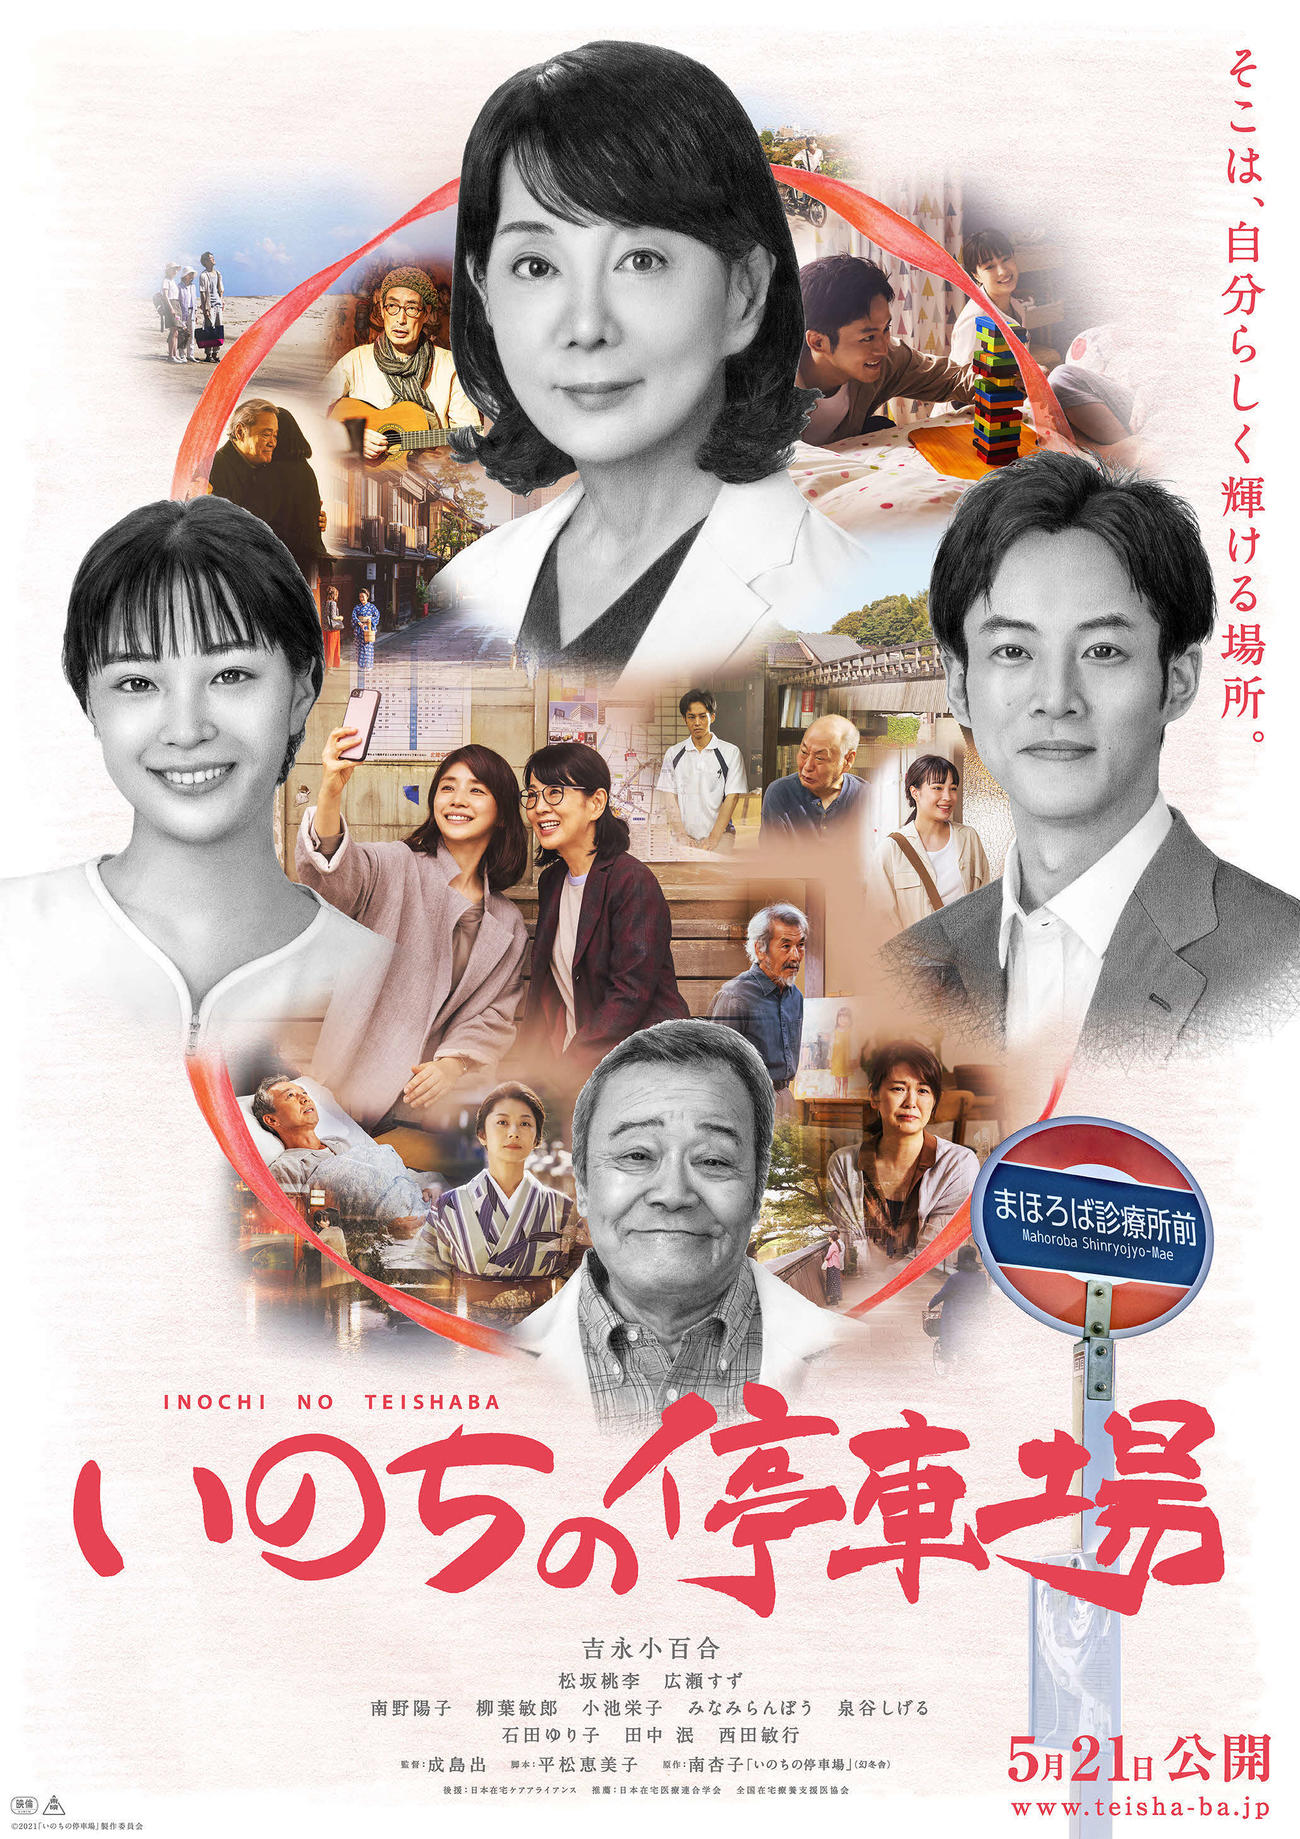 吉永小百合、松坂桃李、広瀬すず、西田敏行が鉛筆画で描かれた、映画「いのちの停車場」のティザーポスター